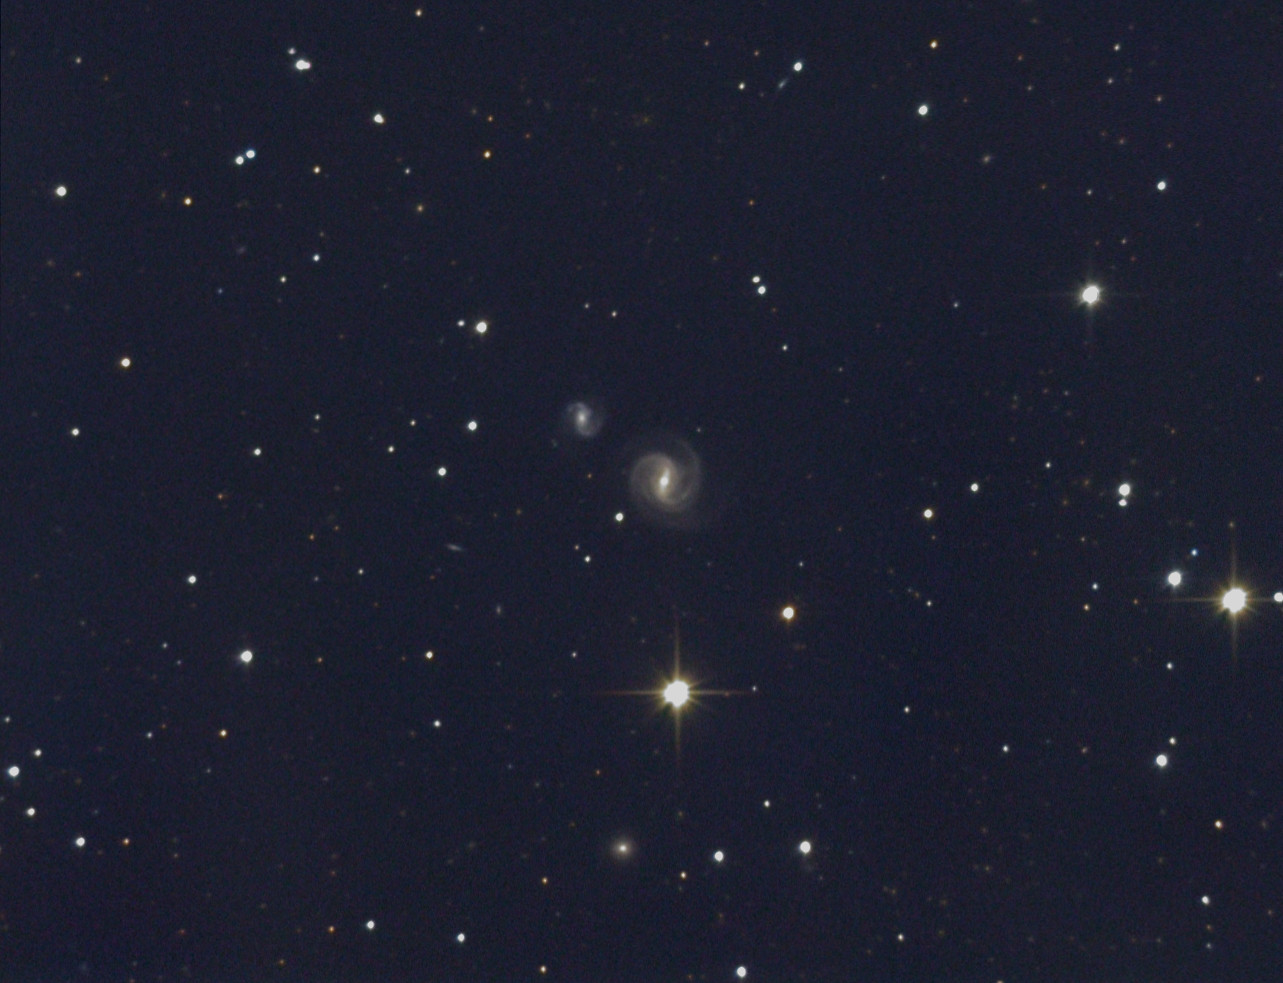 NGC 945